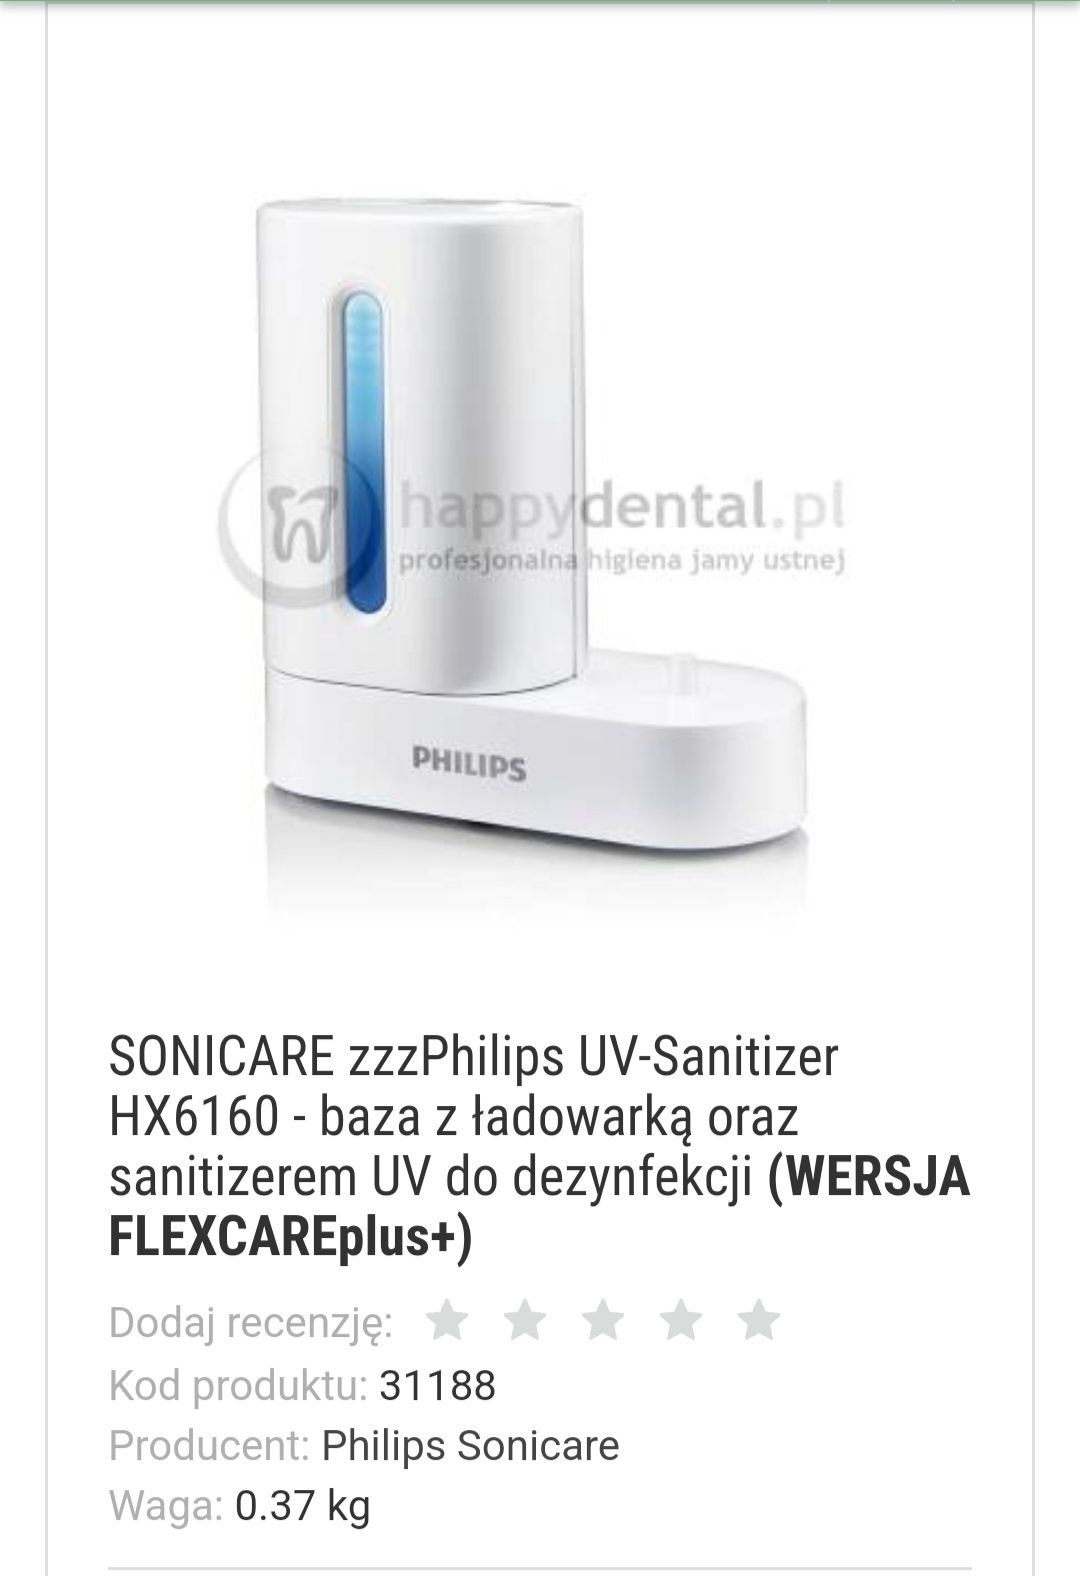 Philips, Baza z ładowarką oraz sanitizerem